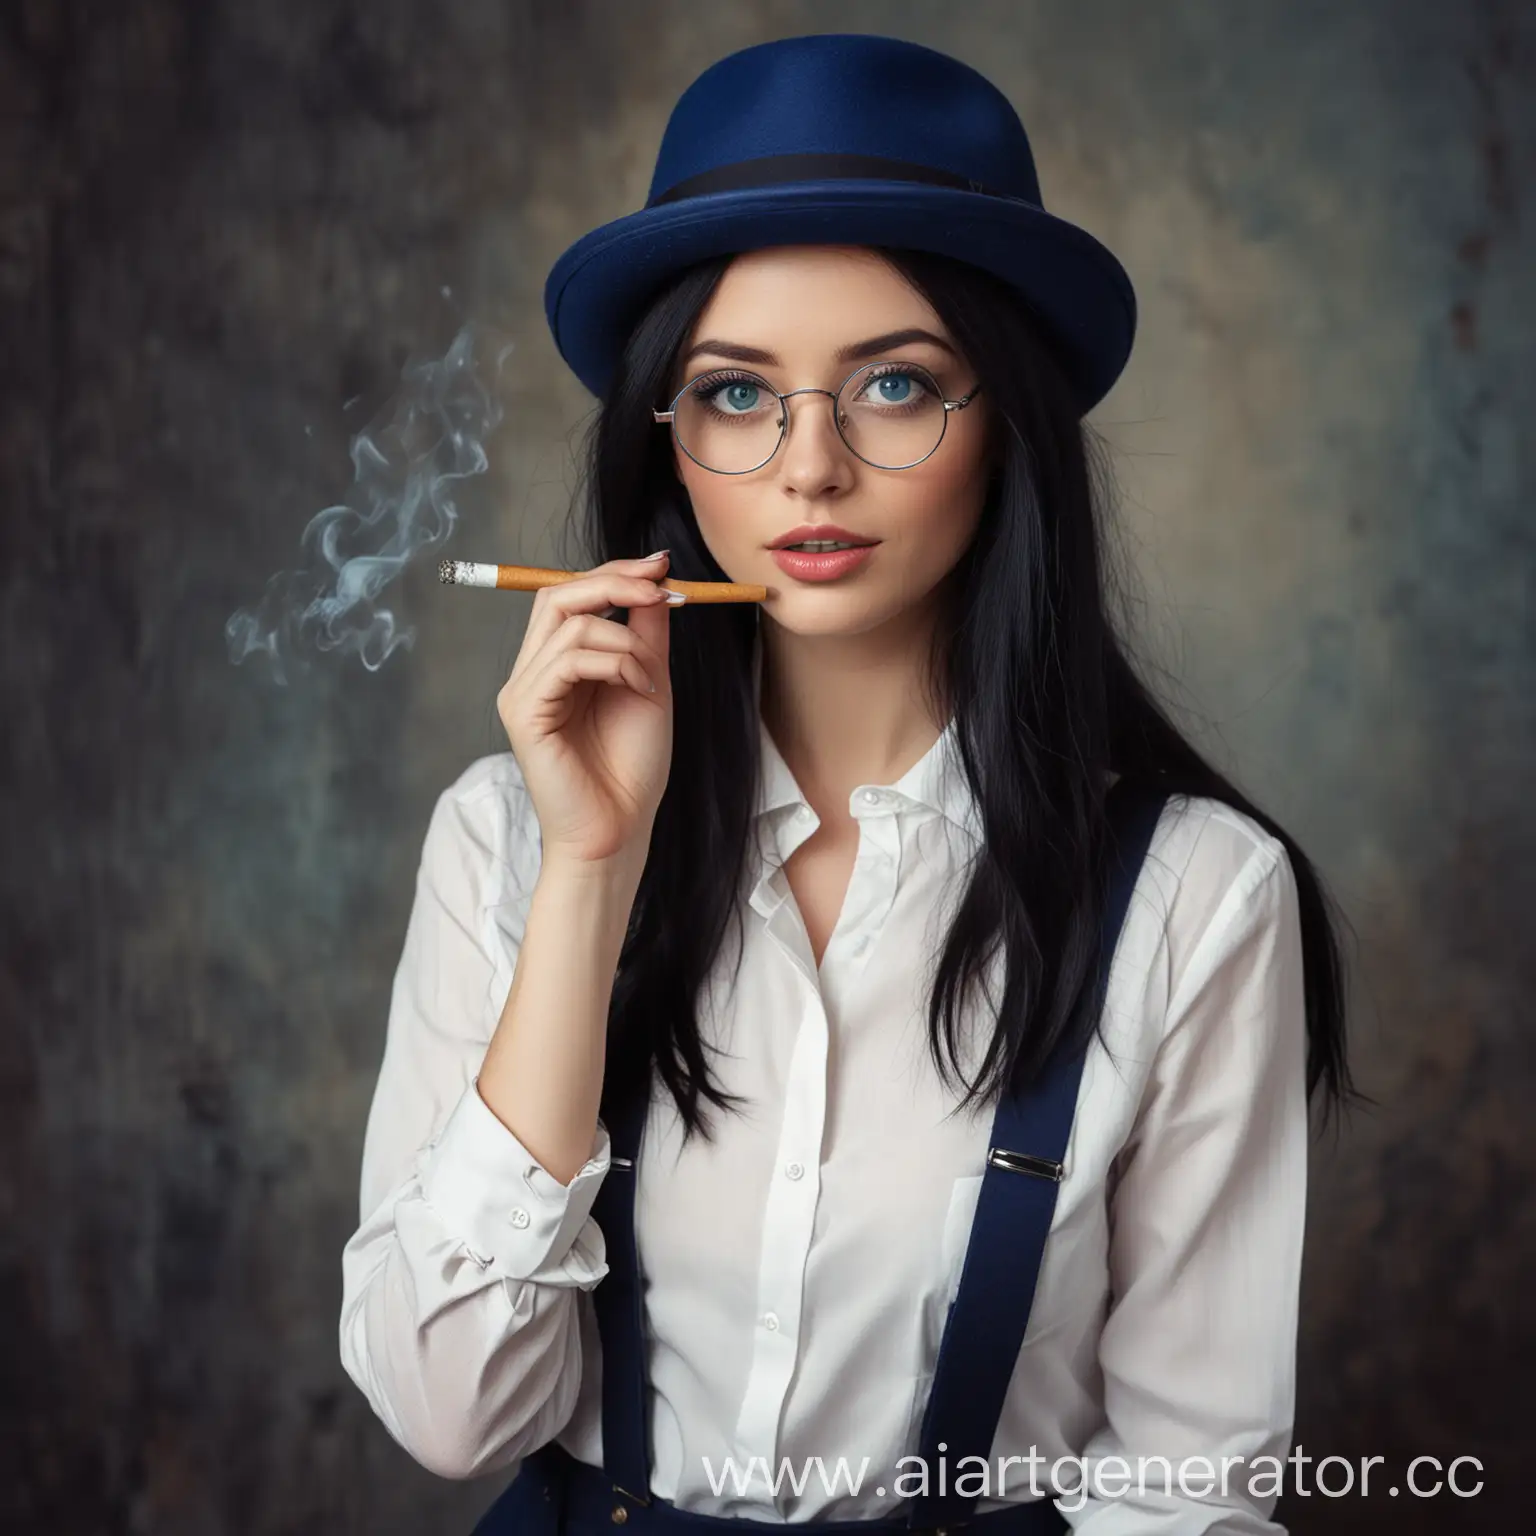 Женщина, с длинными, чёрными волосами, голубыми глазами, в круглых очках, в тёмно-синей фетровой шляпе, в белой рубашке с подтяжками, с сигаретой